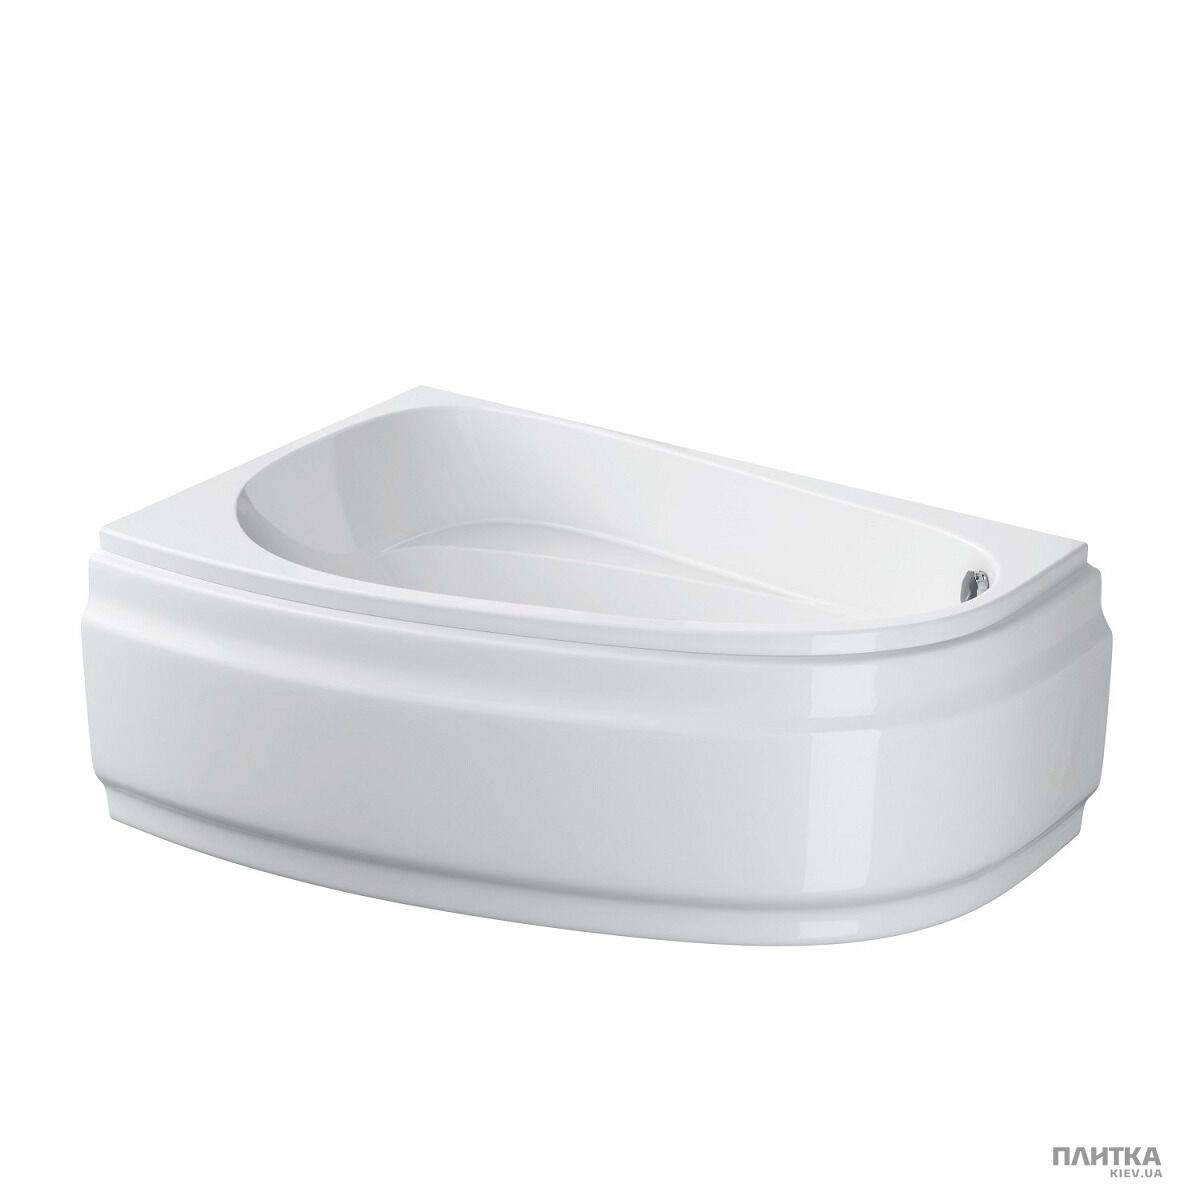 Акрилова ванна Cersanit Joanna New 150x95 см ліва, асиметрична білий